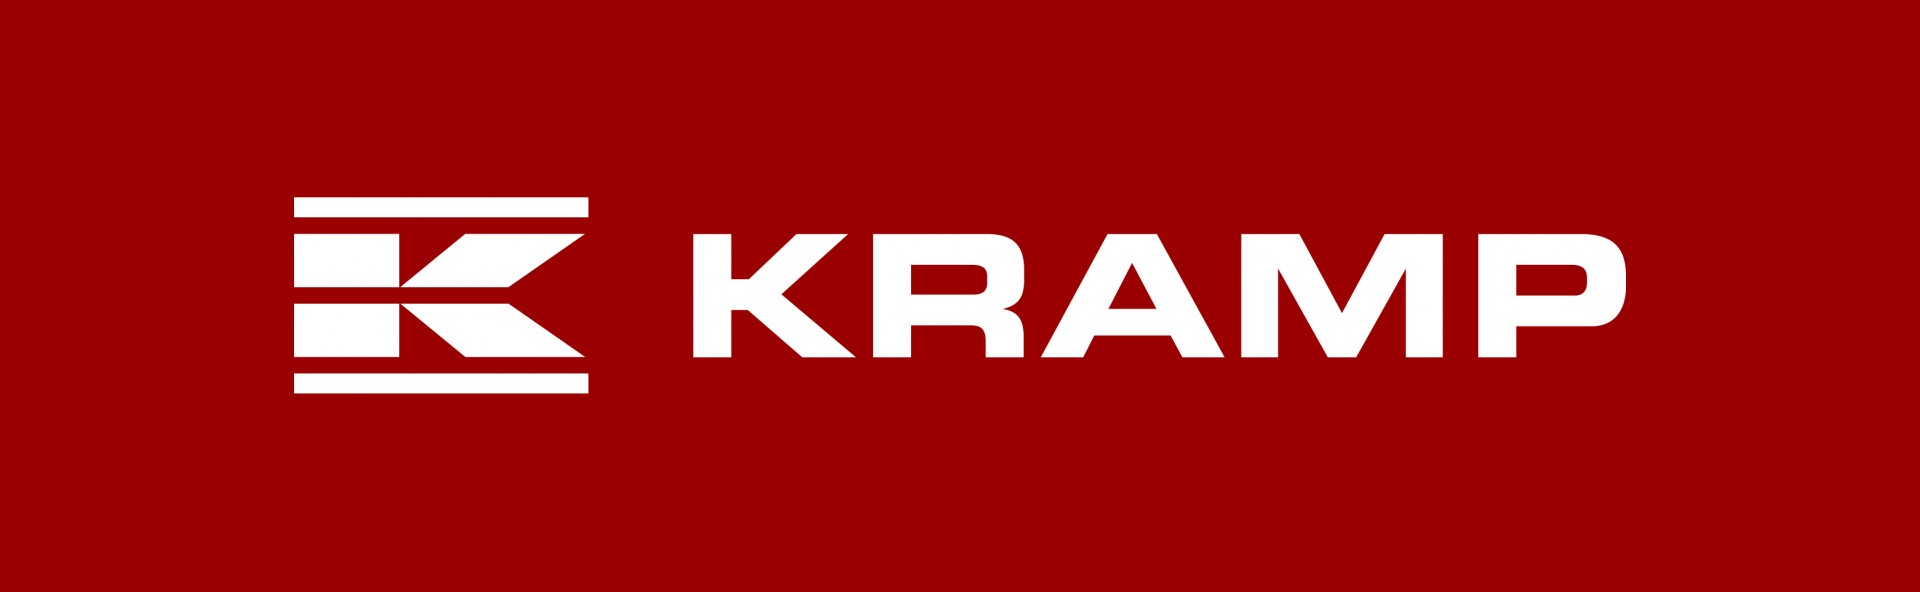 kramp_logo_rgb_300dpi.jpg (1920×592)